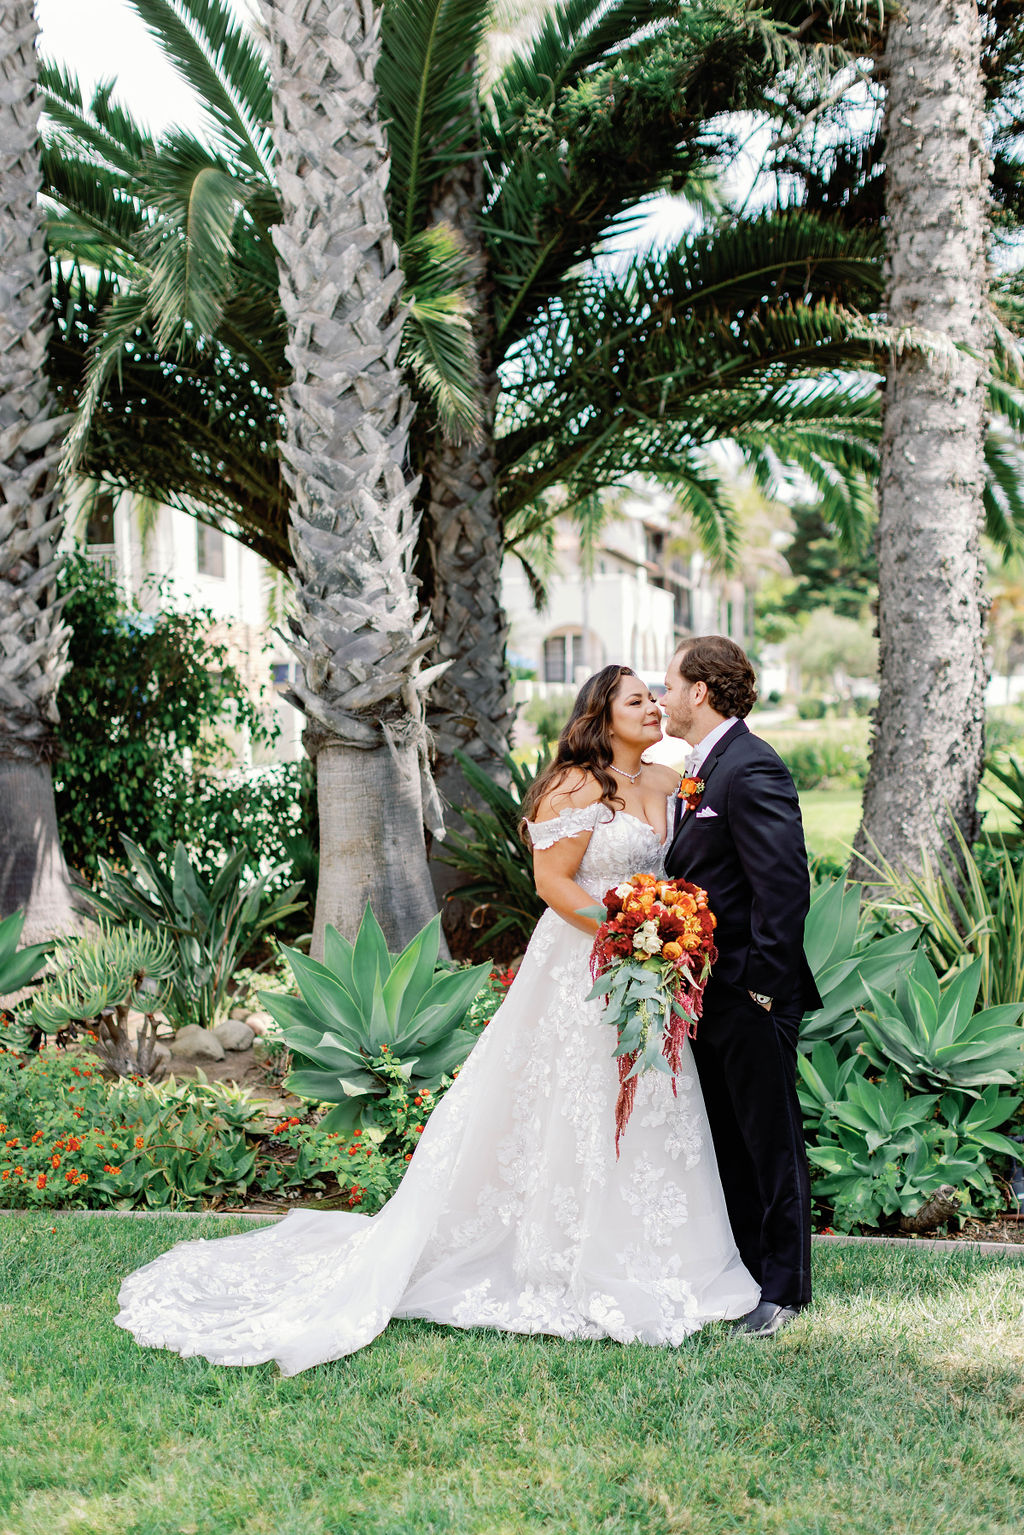 Bride and Groom Kissing at Mission Santa Barbara wedding | Photo by Sarah Block Photography